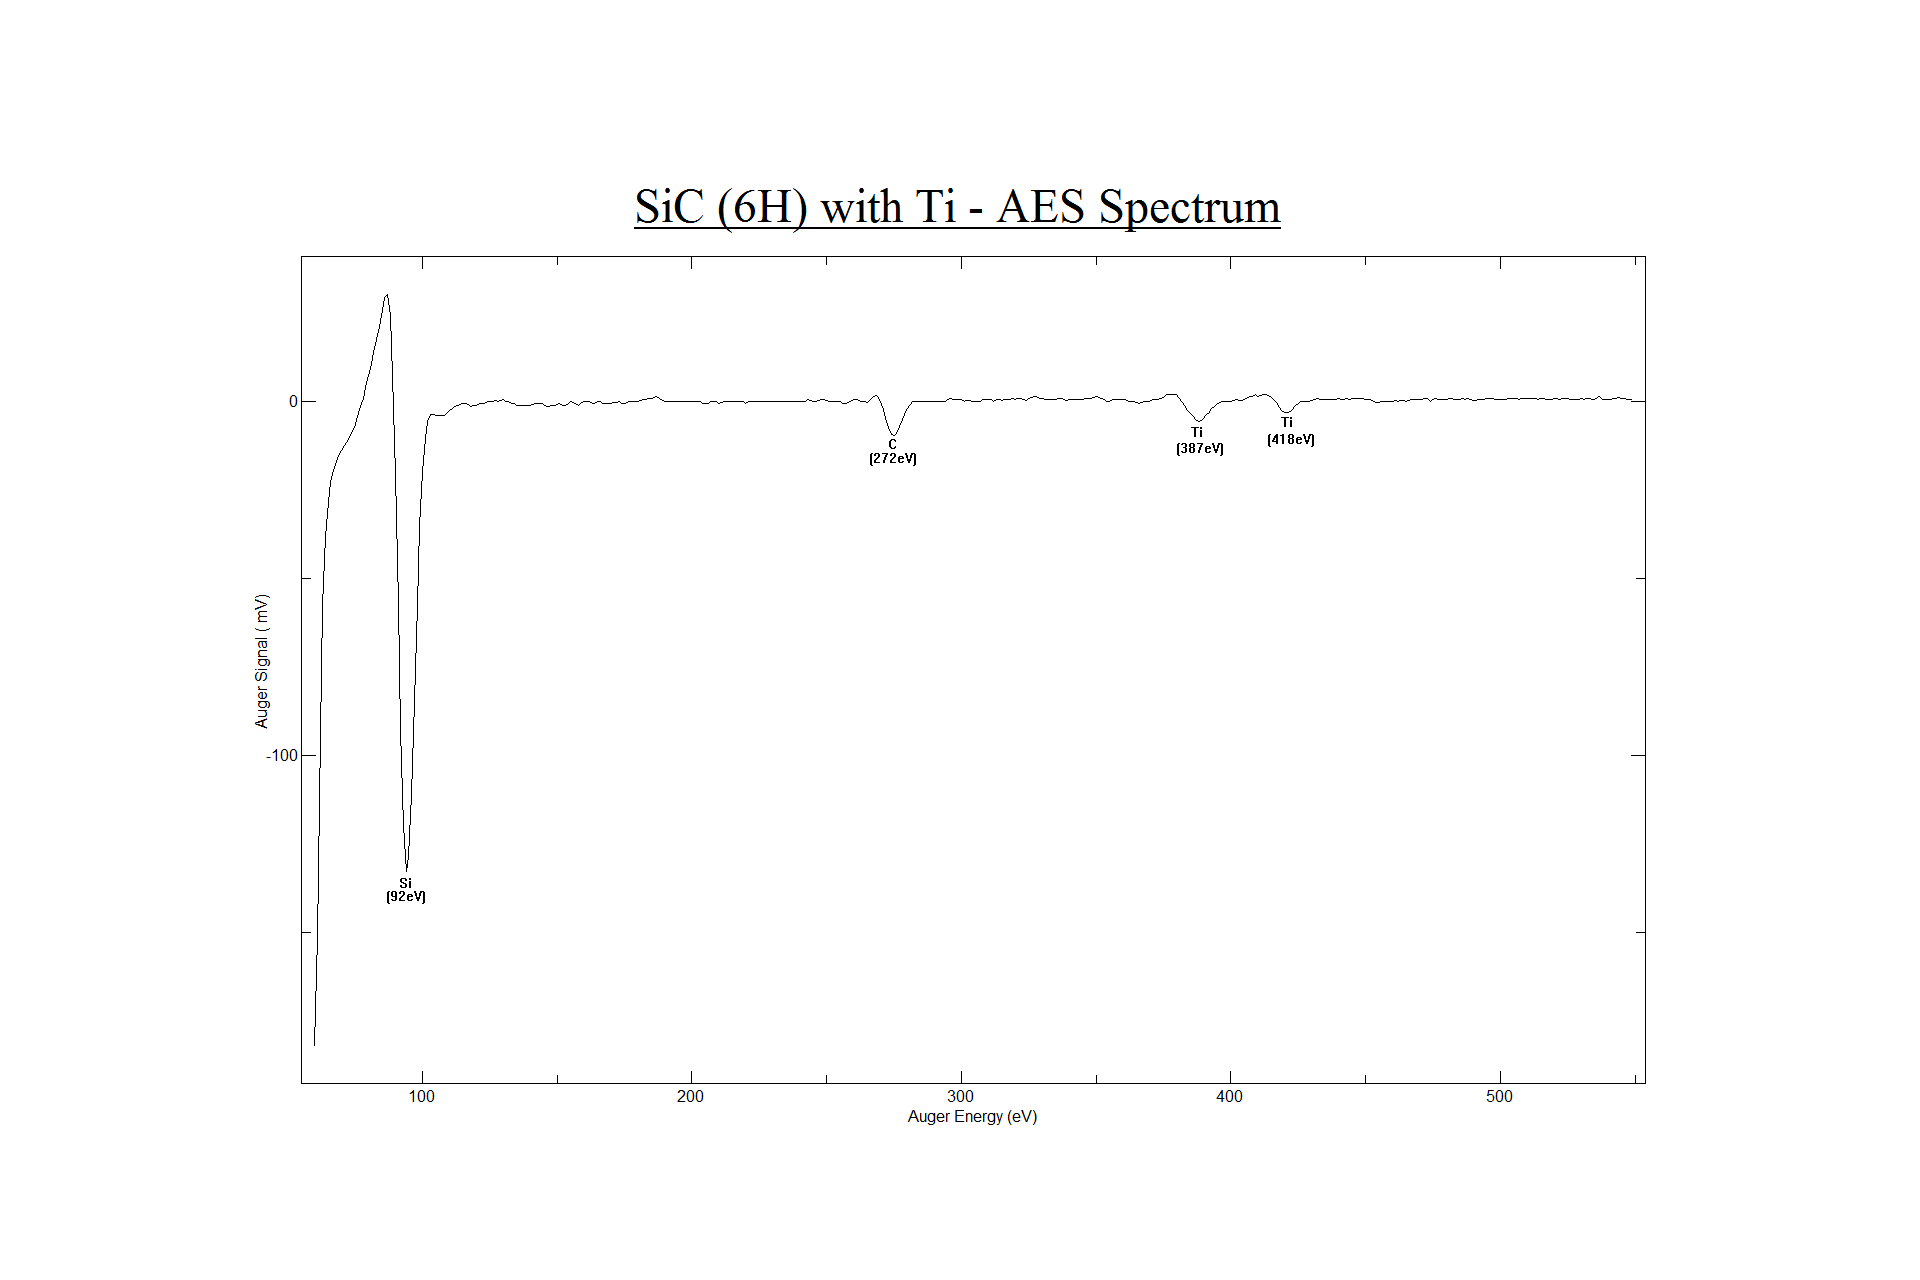 Figure 8. Auger Spectrum of Silicon Carbide 6H with Titanium. 